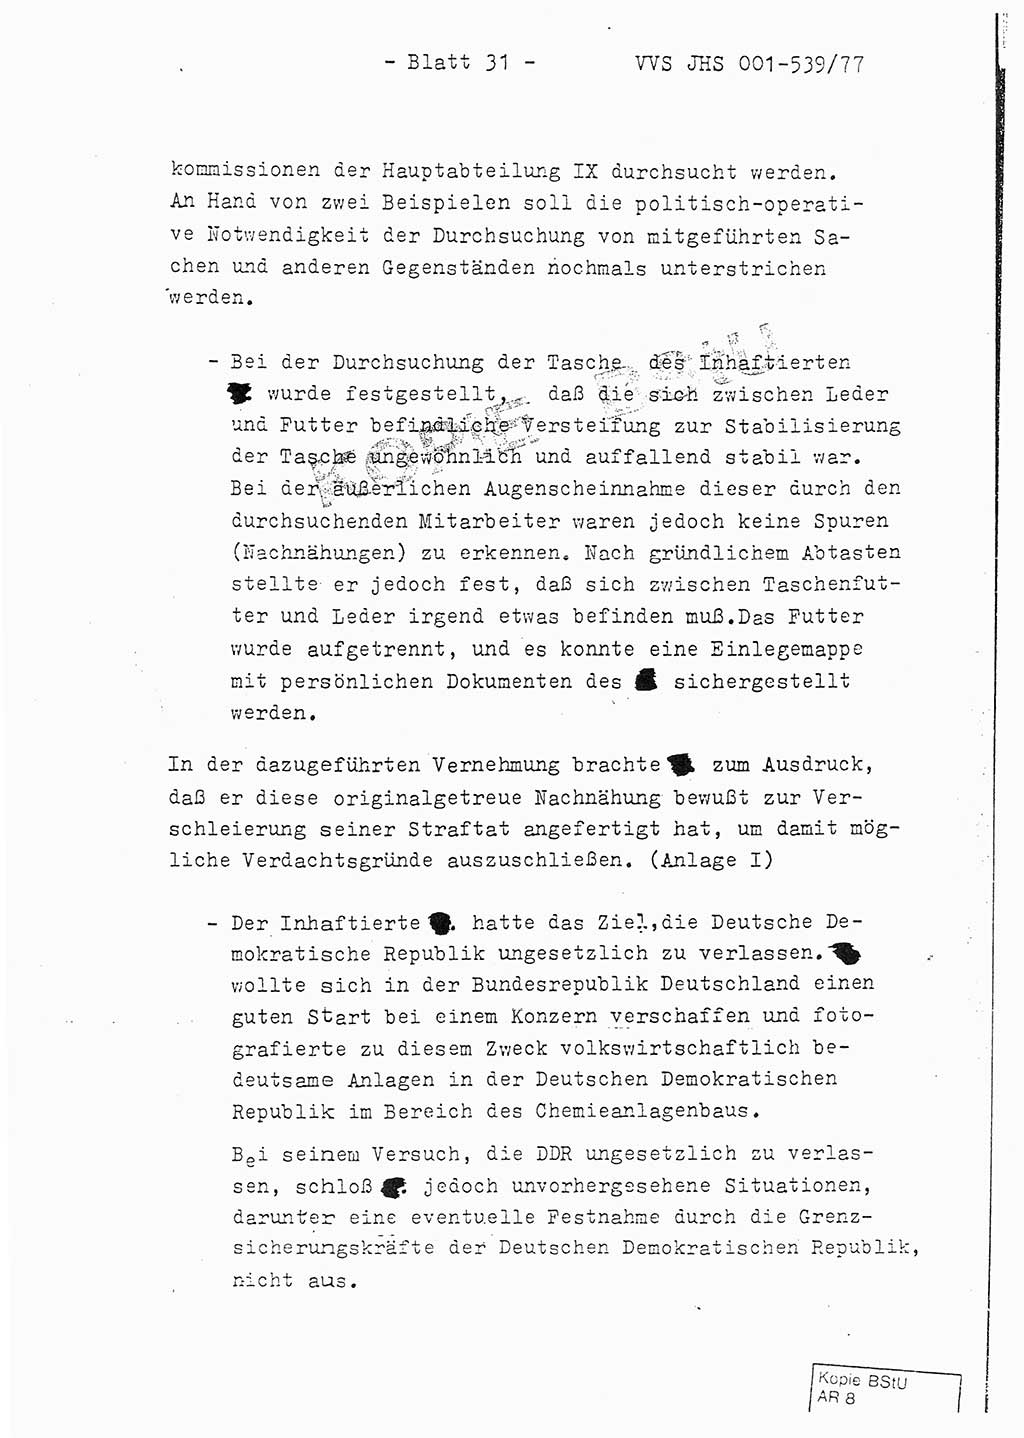 Fachschulabschlußarbeit Hauptmann Dietrich Jung (Abt. ⅩⅣ), Leutnant Klaus Klötzner (Abt. ⅩⅣ), Ministerium für Staatssicherheit (MfS) [Deutsche Demokratische Republik (DDR)], Juristische Hochschule (JHS), Vertrauliche Verschlußsache (VVS) 001-539/77, Potsdam 1978, Seite 31 (FS-Abschl.-Arb. MfS DDR JHS VVS 001-539/77 1978, S. 31)